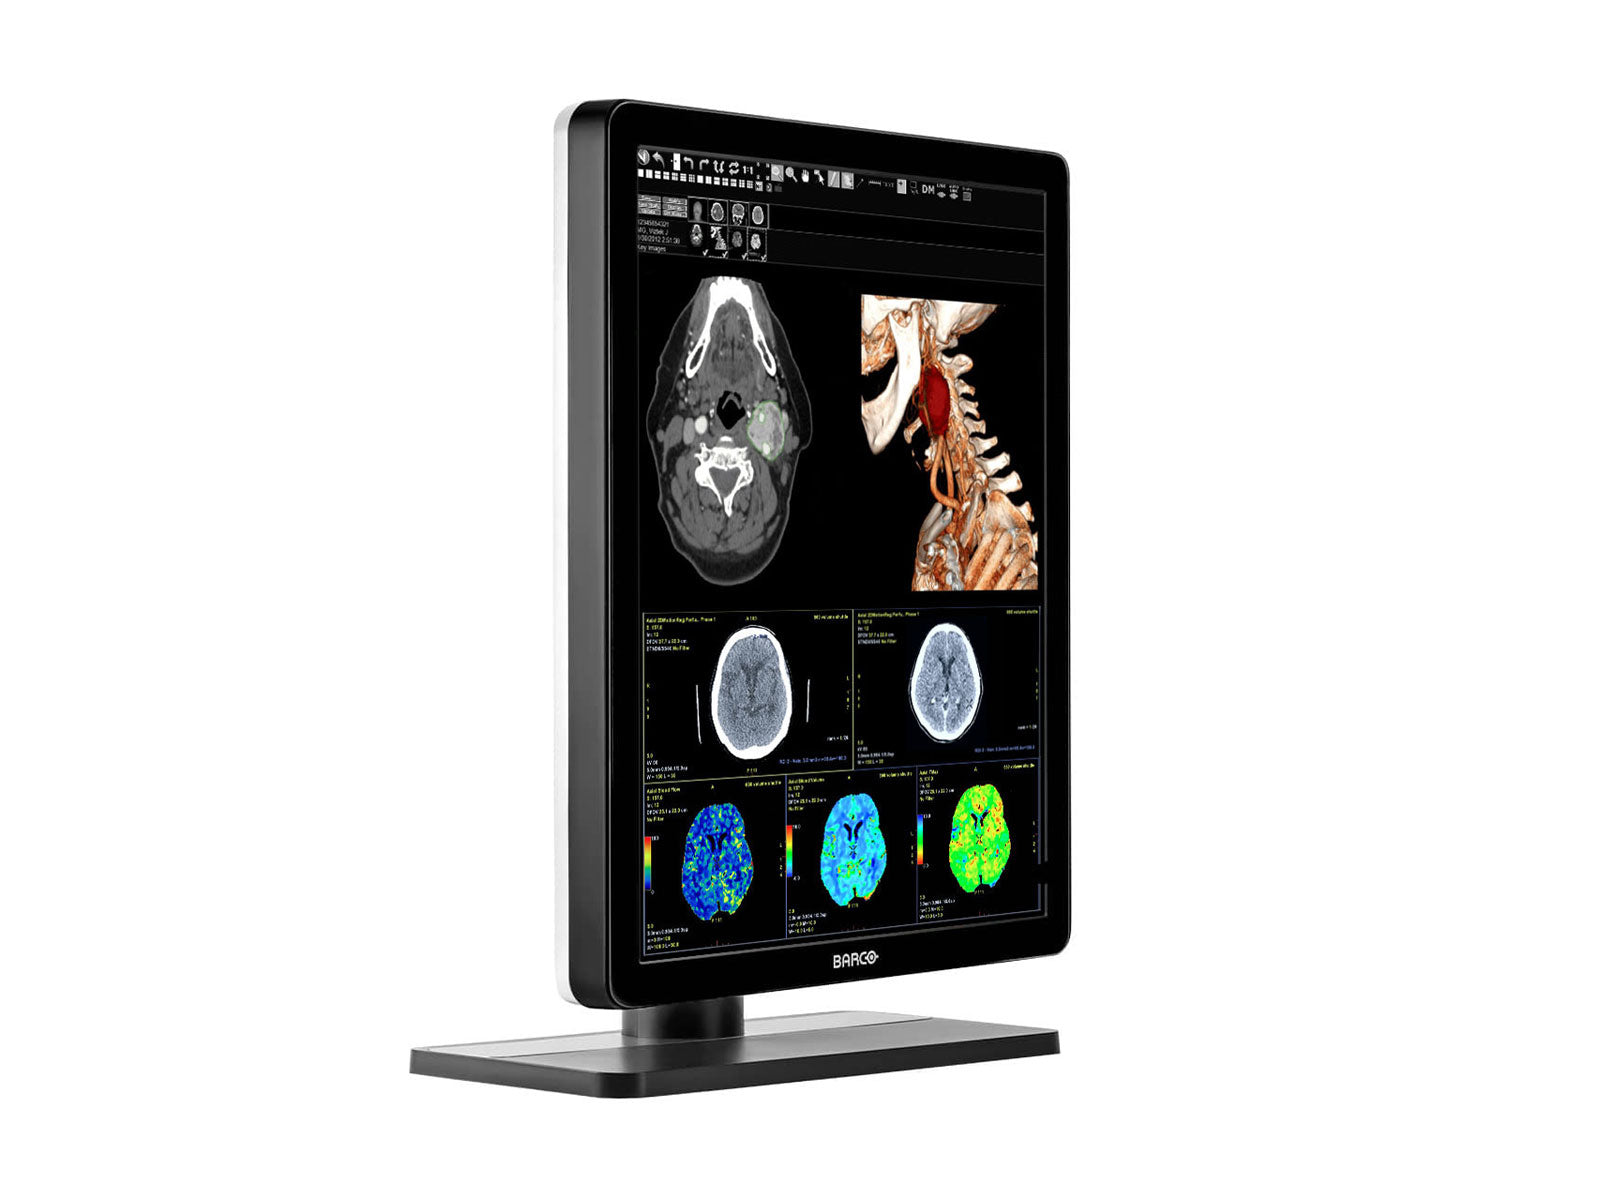 Barco Nio MDNC-3421 3MP 21" Color LED General Radiology PACS Display Monitors.com 